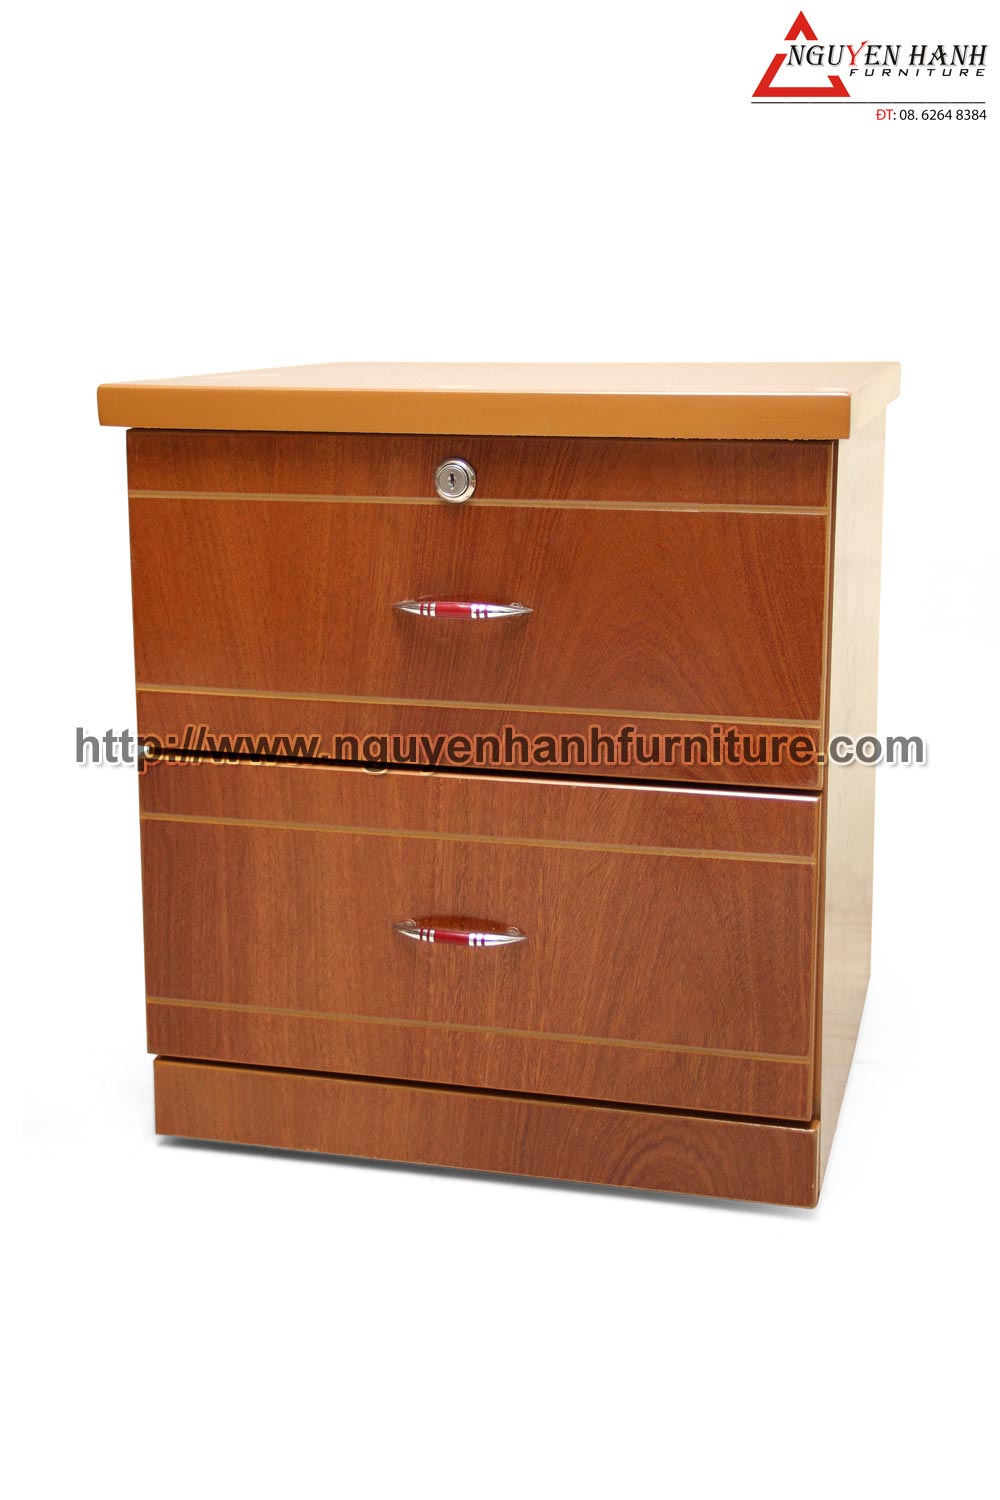 Name product: Headboard Cabinet of Veneer Bead tree wood